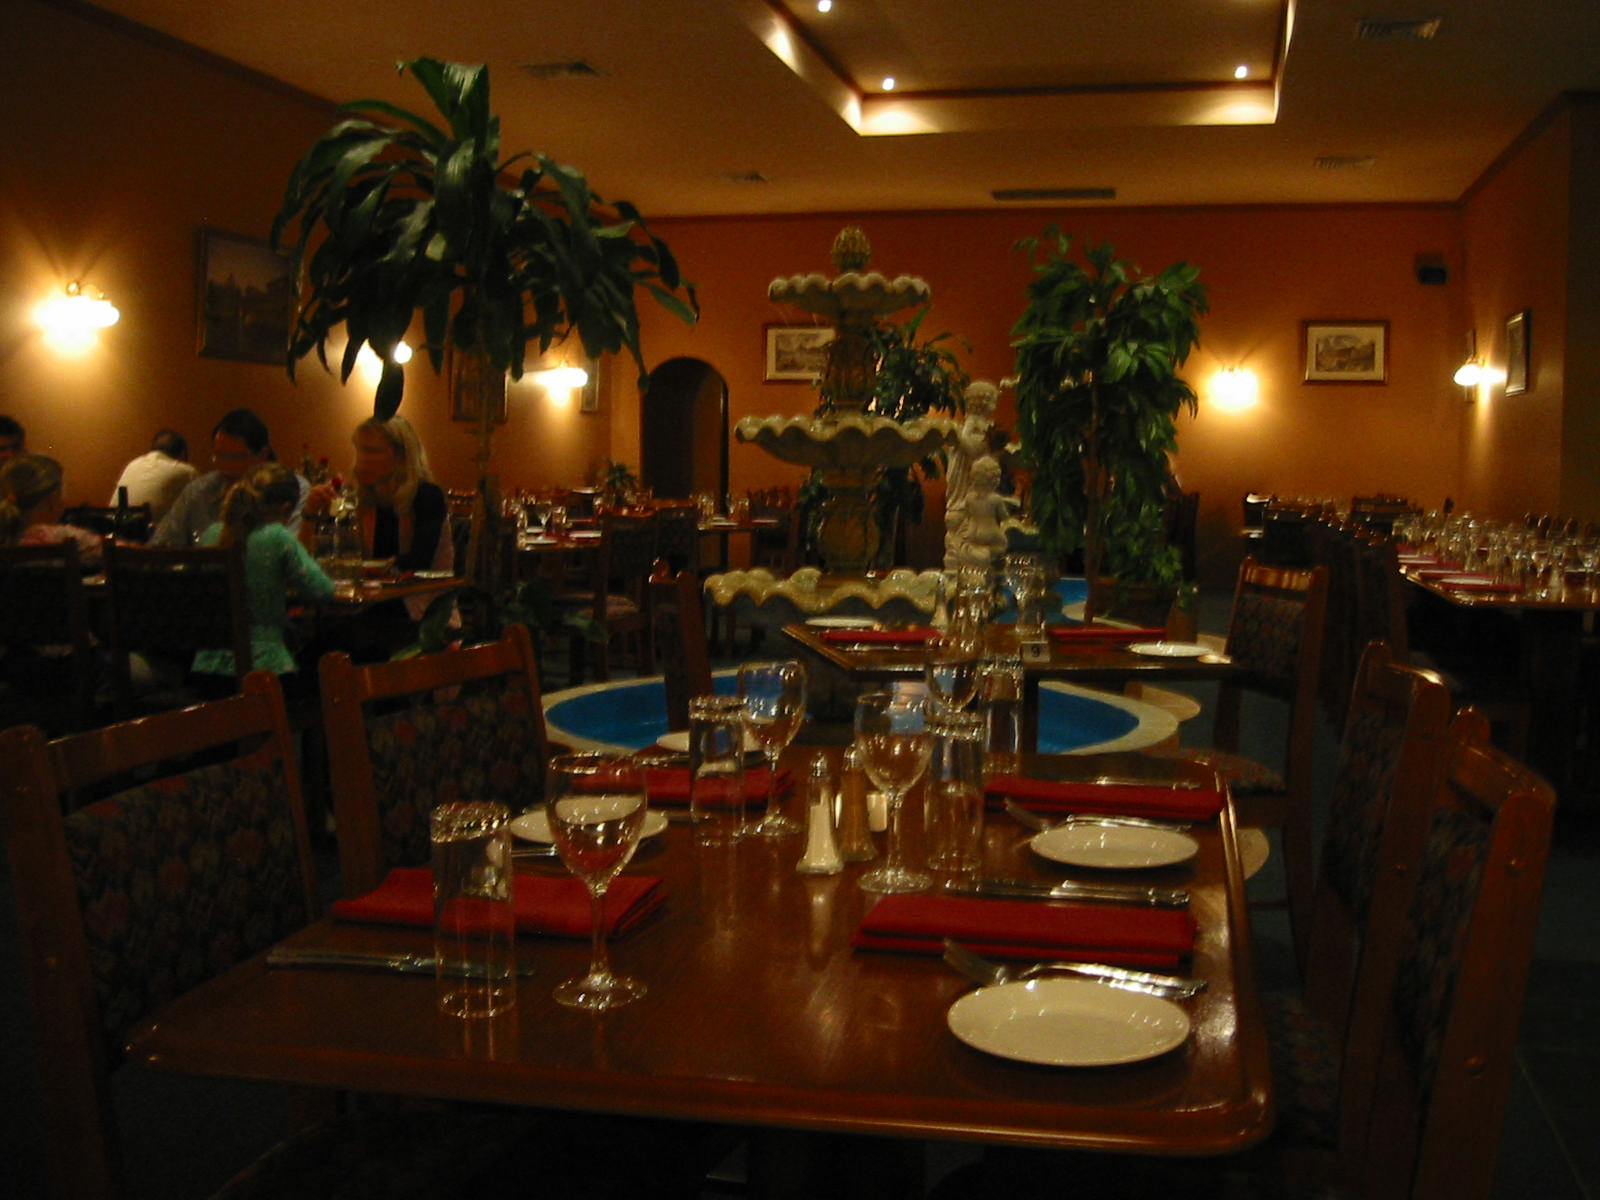 Restaurant dining room